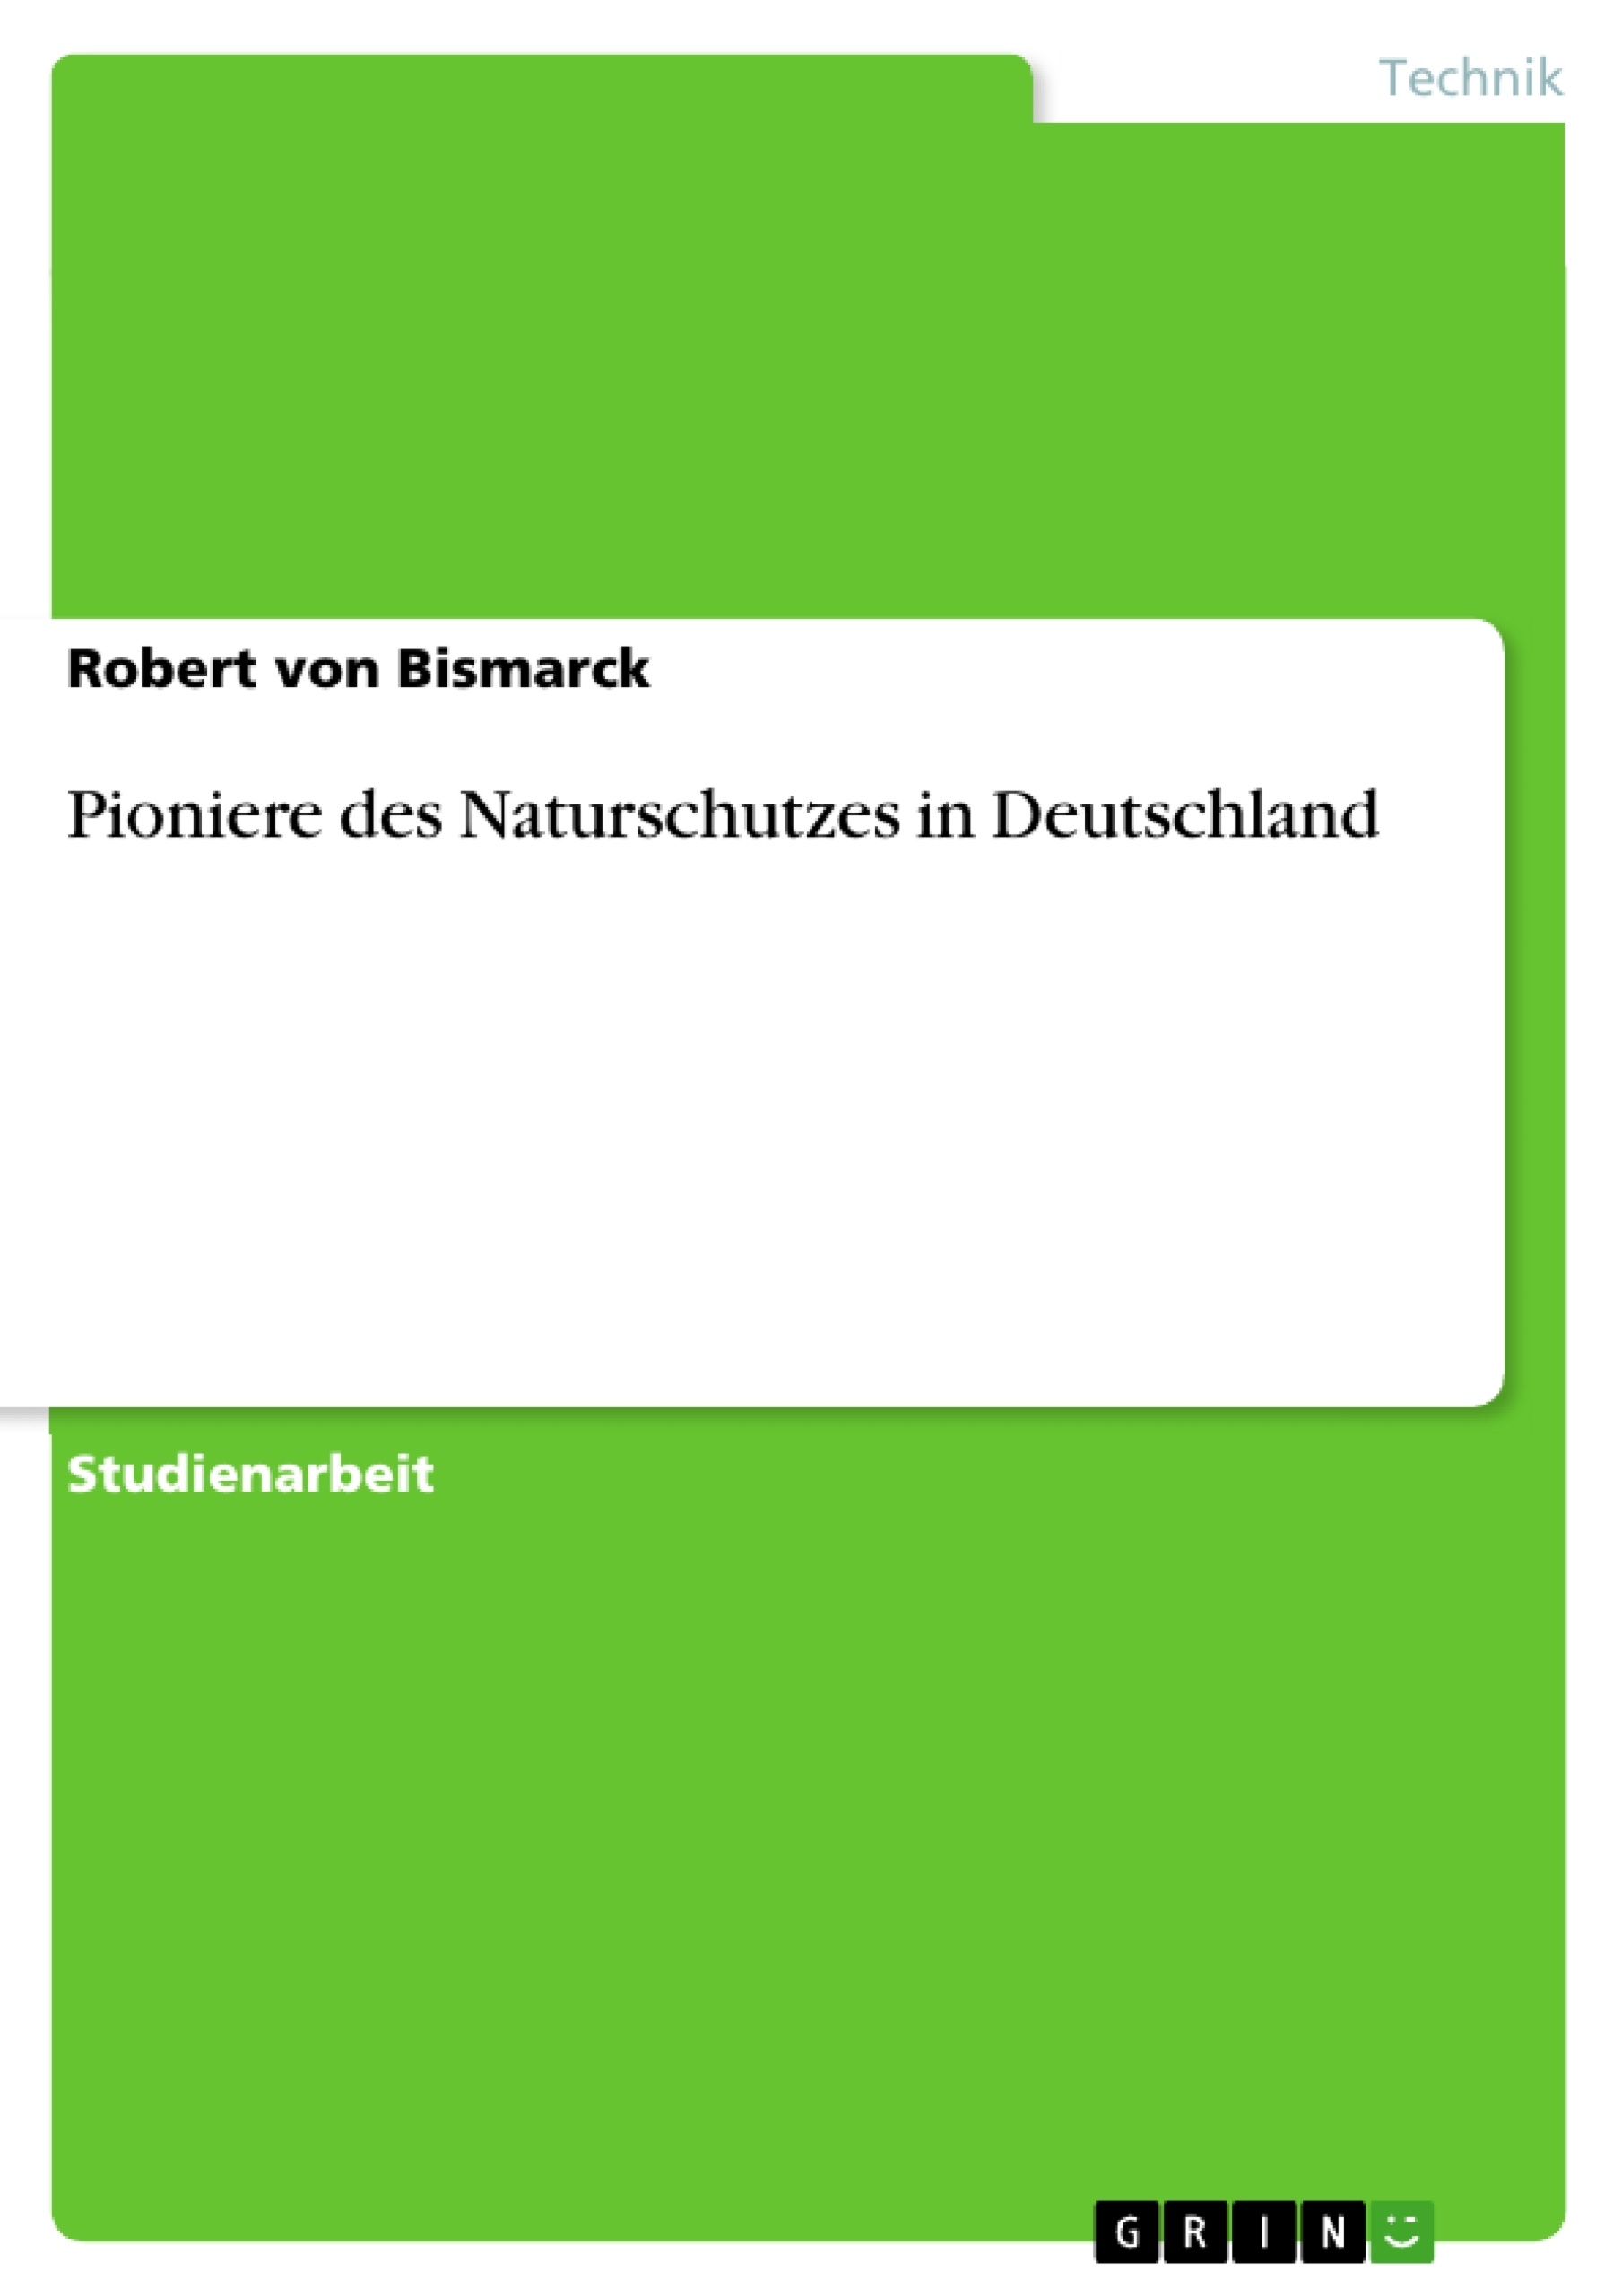 Título: Pioniere des Naturschutzes in Deutschland